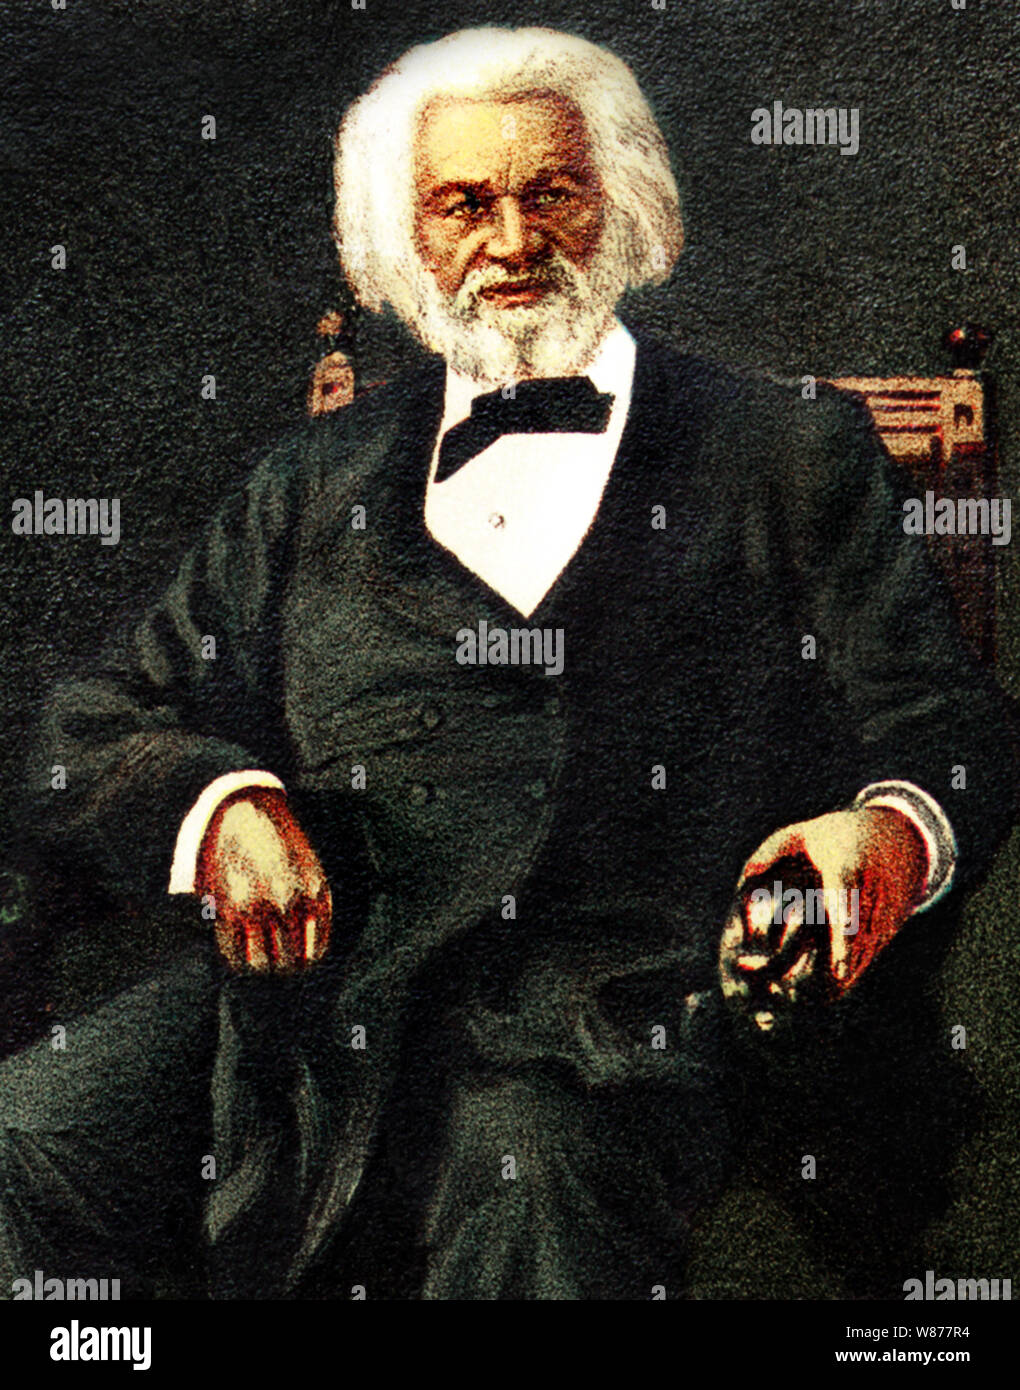 Vintage portrait couleur de réformateur social américain, abolitionniste, orateur, écrivain et homme d'Frederick Douglass (né Frederick Augustus Washington Bailey) c1818 - 1895). Banque D'Images